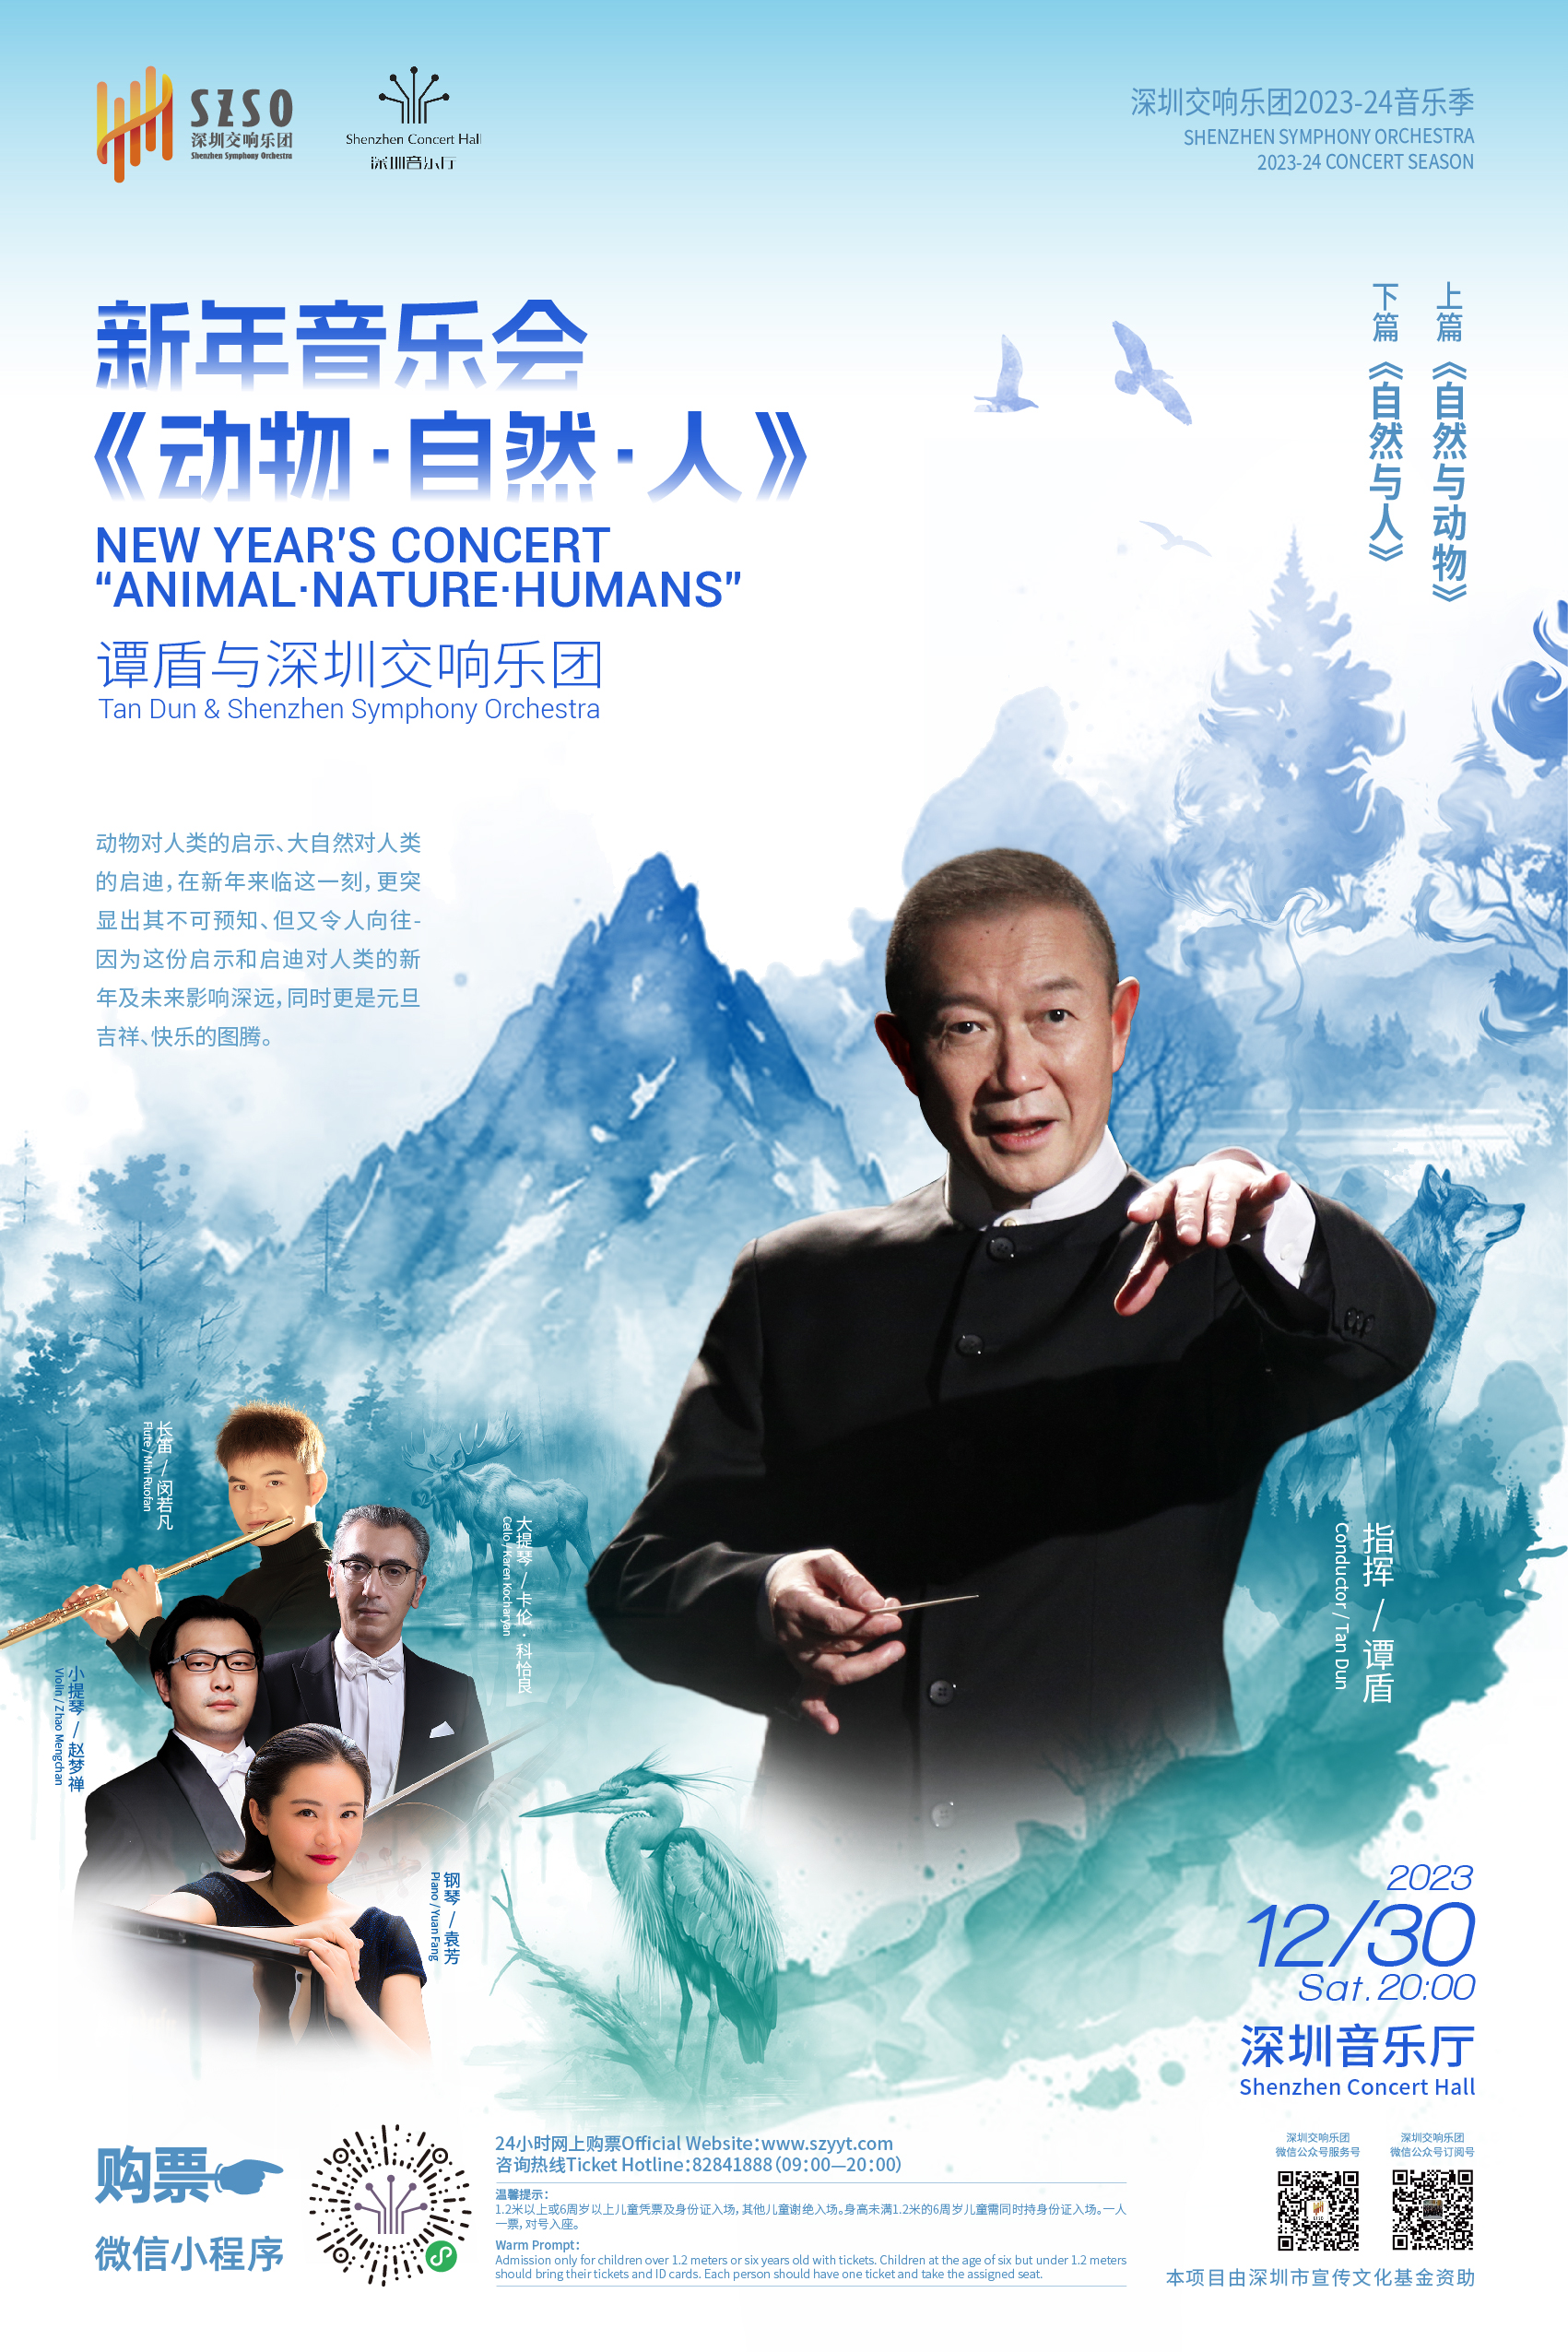 中西合璧精彩纷呈 深圳新年音乐会将送上最动听的祝福